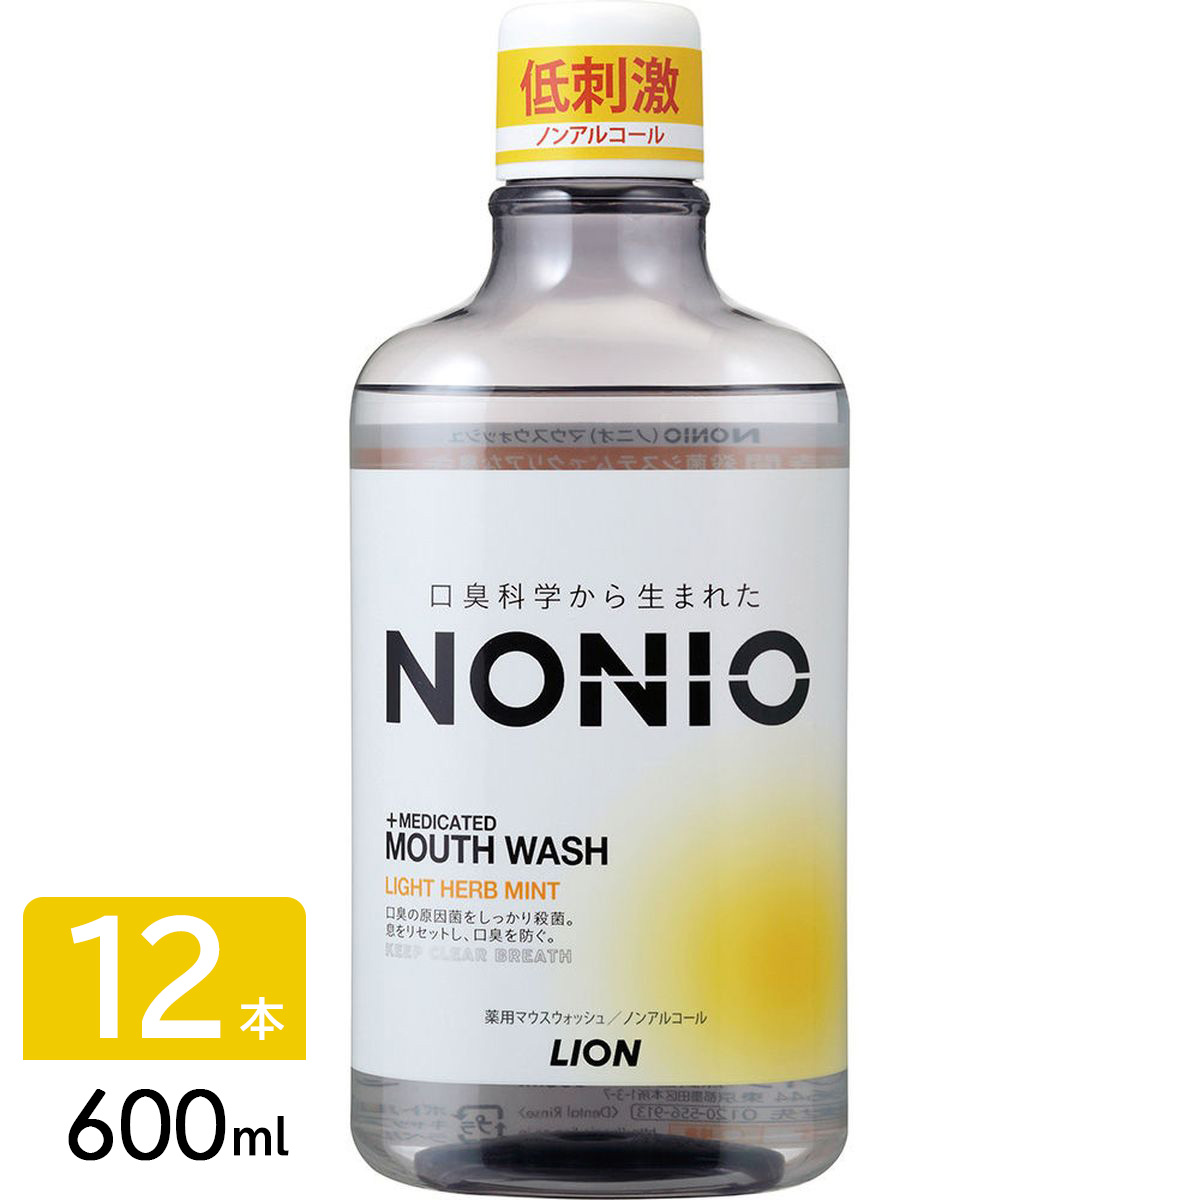 ［在庫限り特価］NONIO ノニオ マウスウォッシュ 洗口液 ノンアルコール ライトハーブミント 600ml×12本